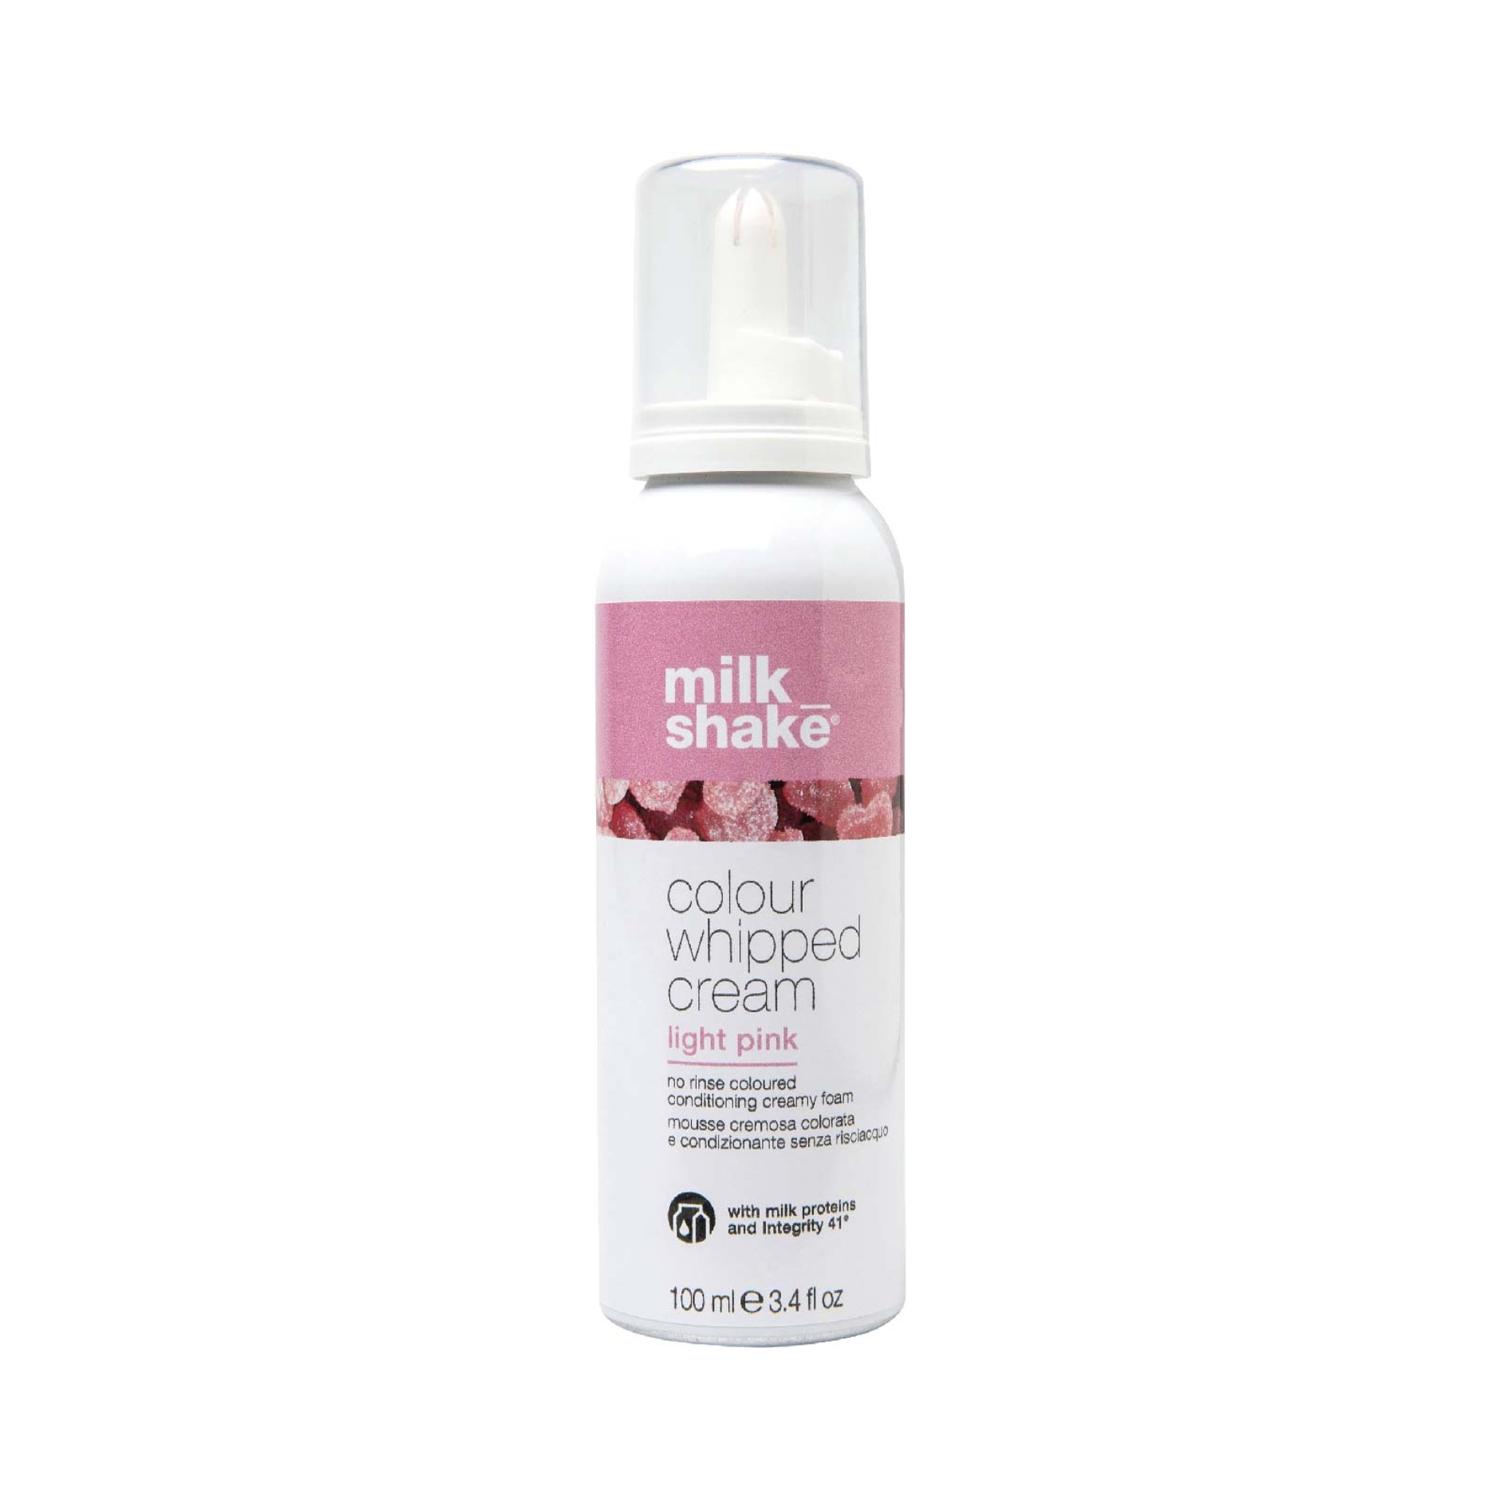 milk shake whipped cream hair color - light pink (100ml)